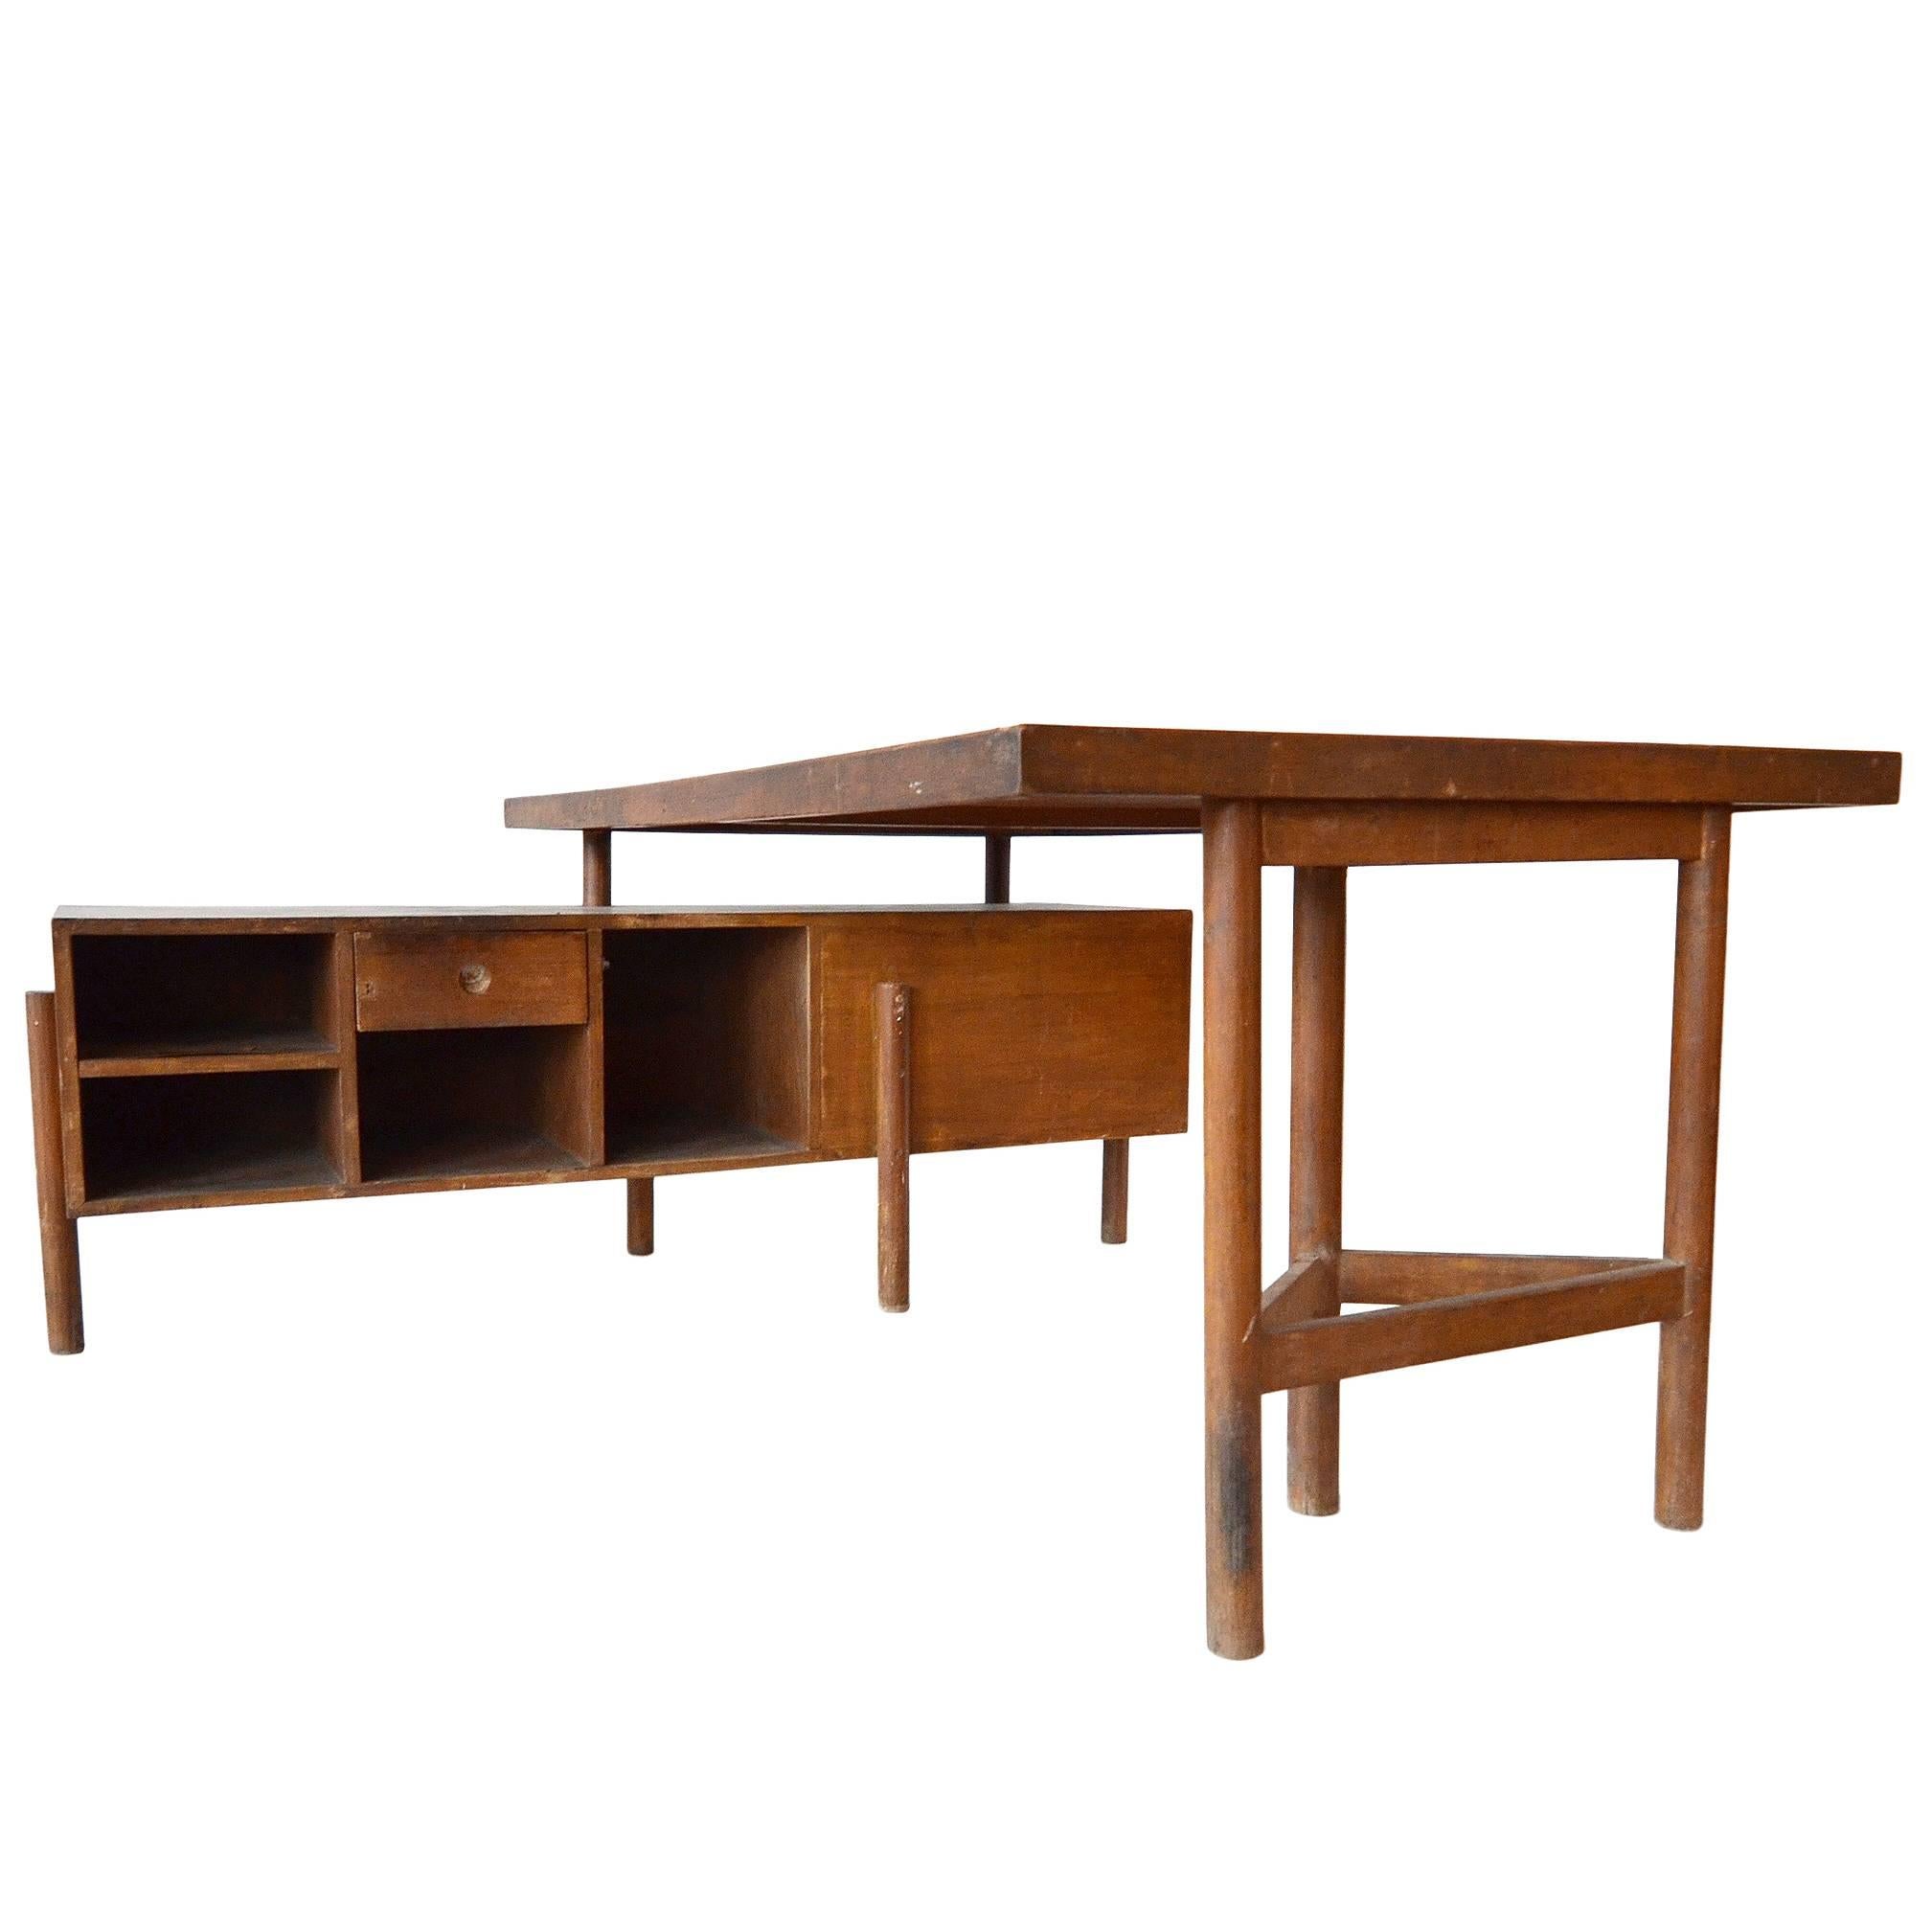 Pierre Jeanneret "Junior Officer's Desk, " 1957-1958